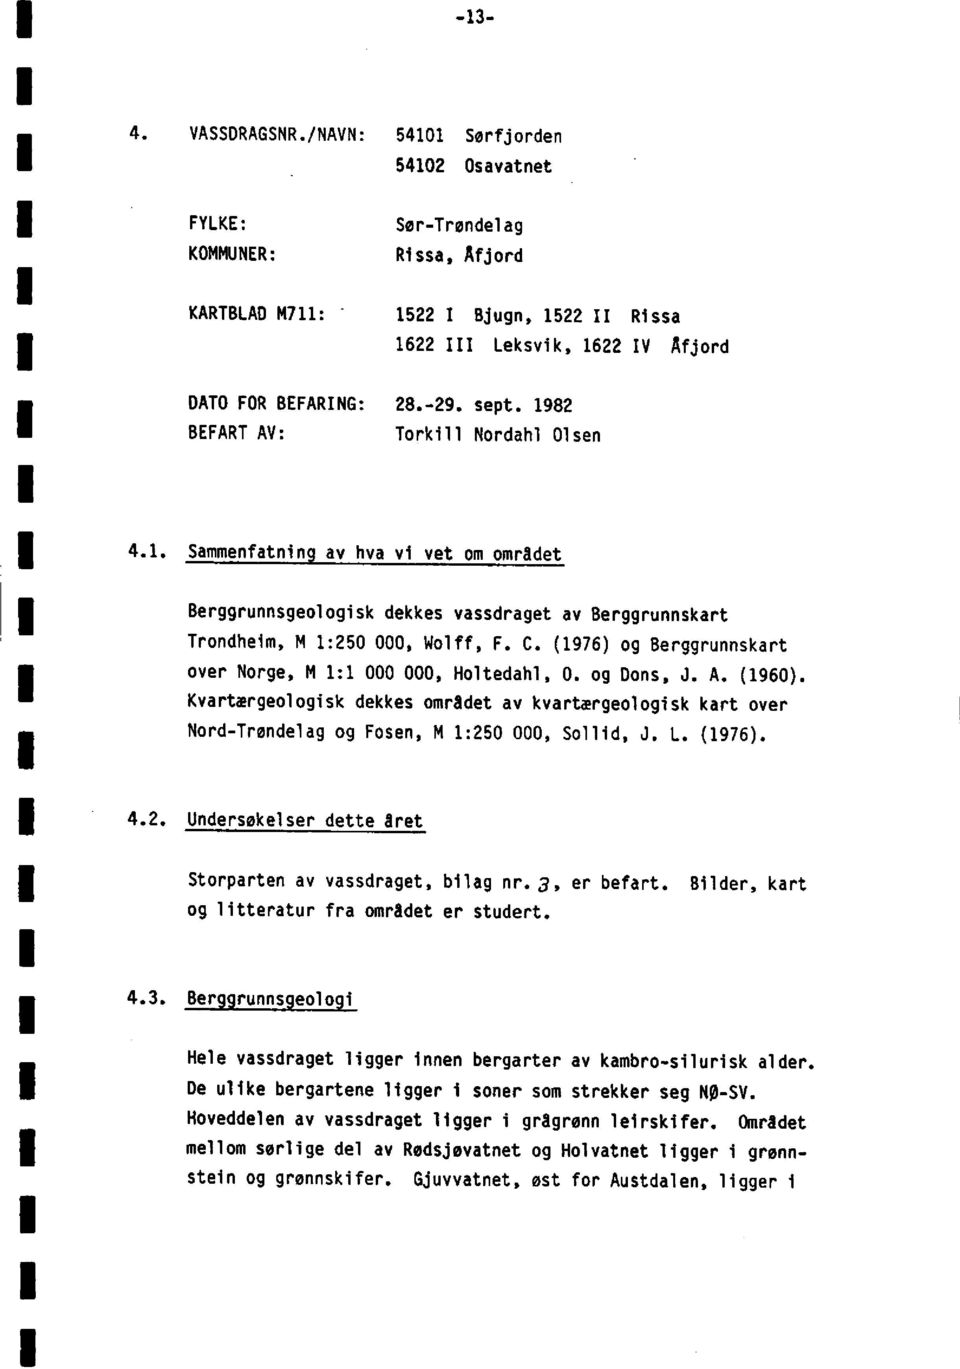 (1976)og Berggrunnskart over Norge M 1:1 000 000 Holtedahl0. og Dons J. A. (1960). Kvartærgeologiskdekkes området av kvartærgeologiskkart over Nord-Trøndelagog Fosen M 1:250 000 Sollid J. L. (1976).